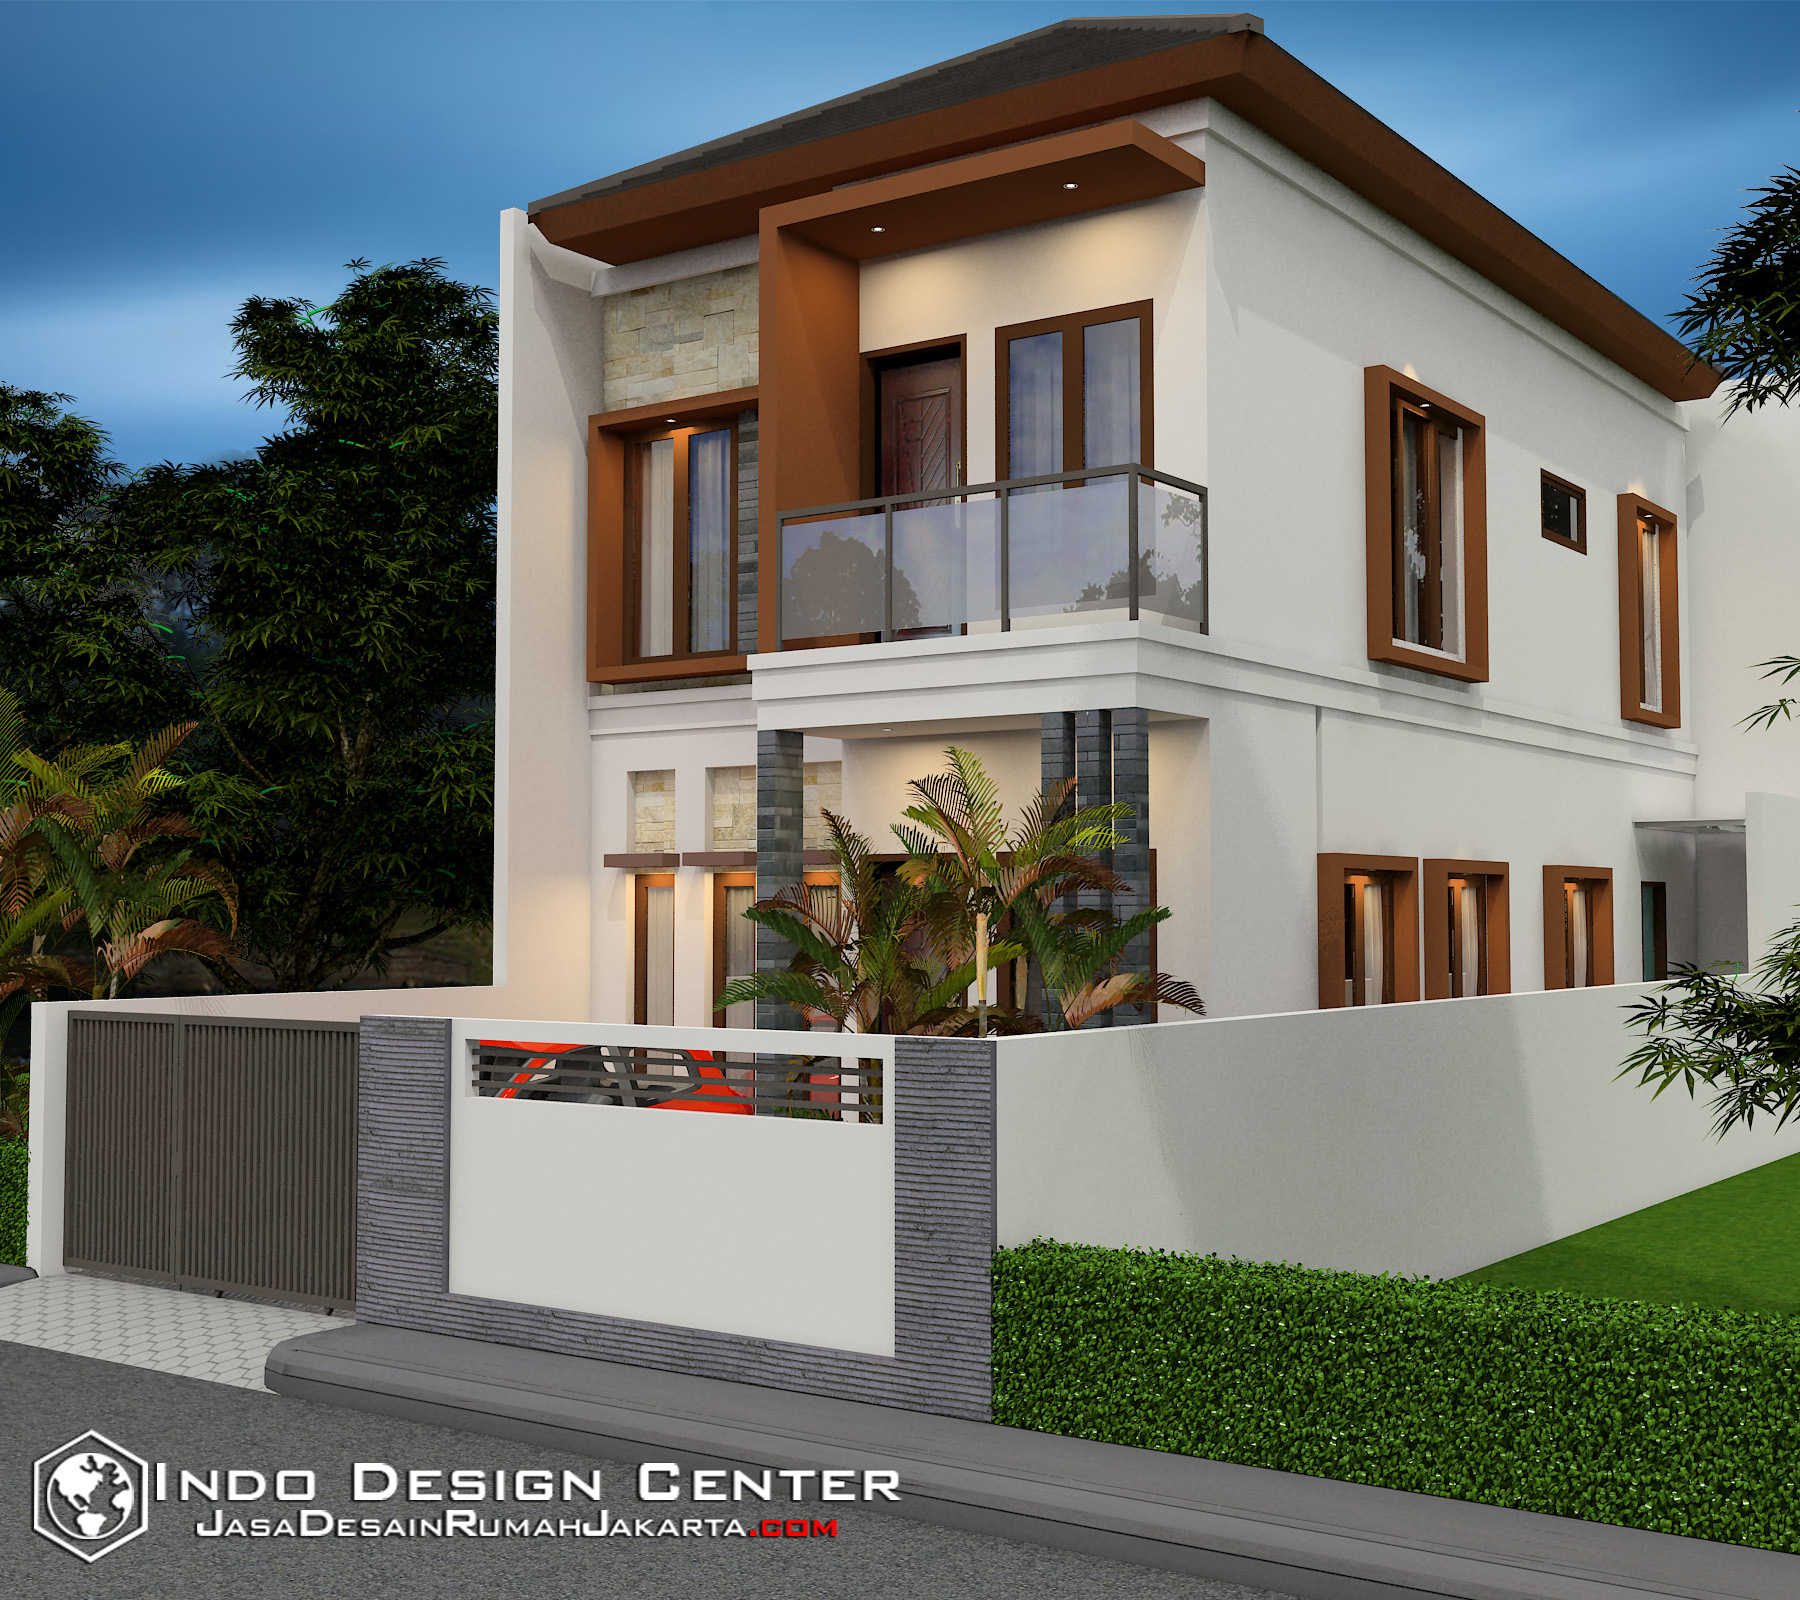 Gambar Desain Rumah Kontrakan Ukuran 4x6  Desain  Rumah  Mesra